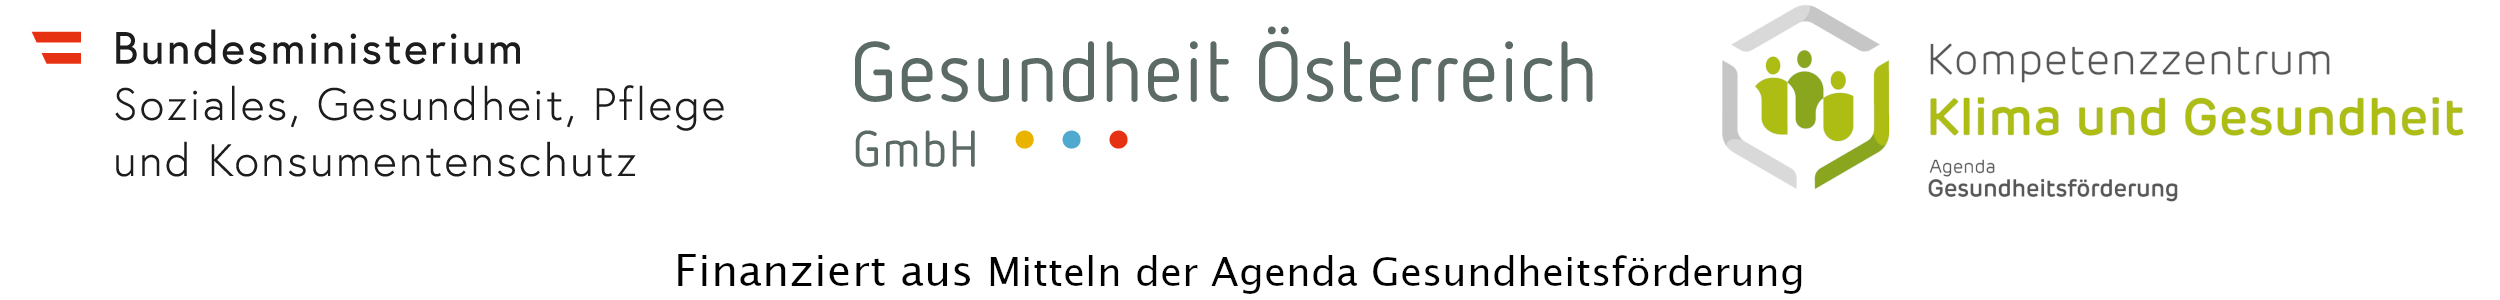 Logo des Logo des des Bundesministeriums für Soziales, Gesundheit, Pflege und Konsumentenschutz , der Gesundheit Österreich GmbH und der Agenda Gesundheitsförderung